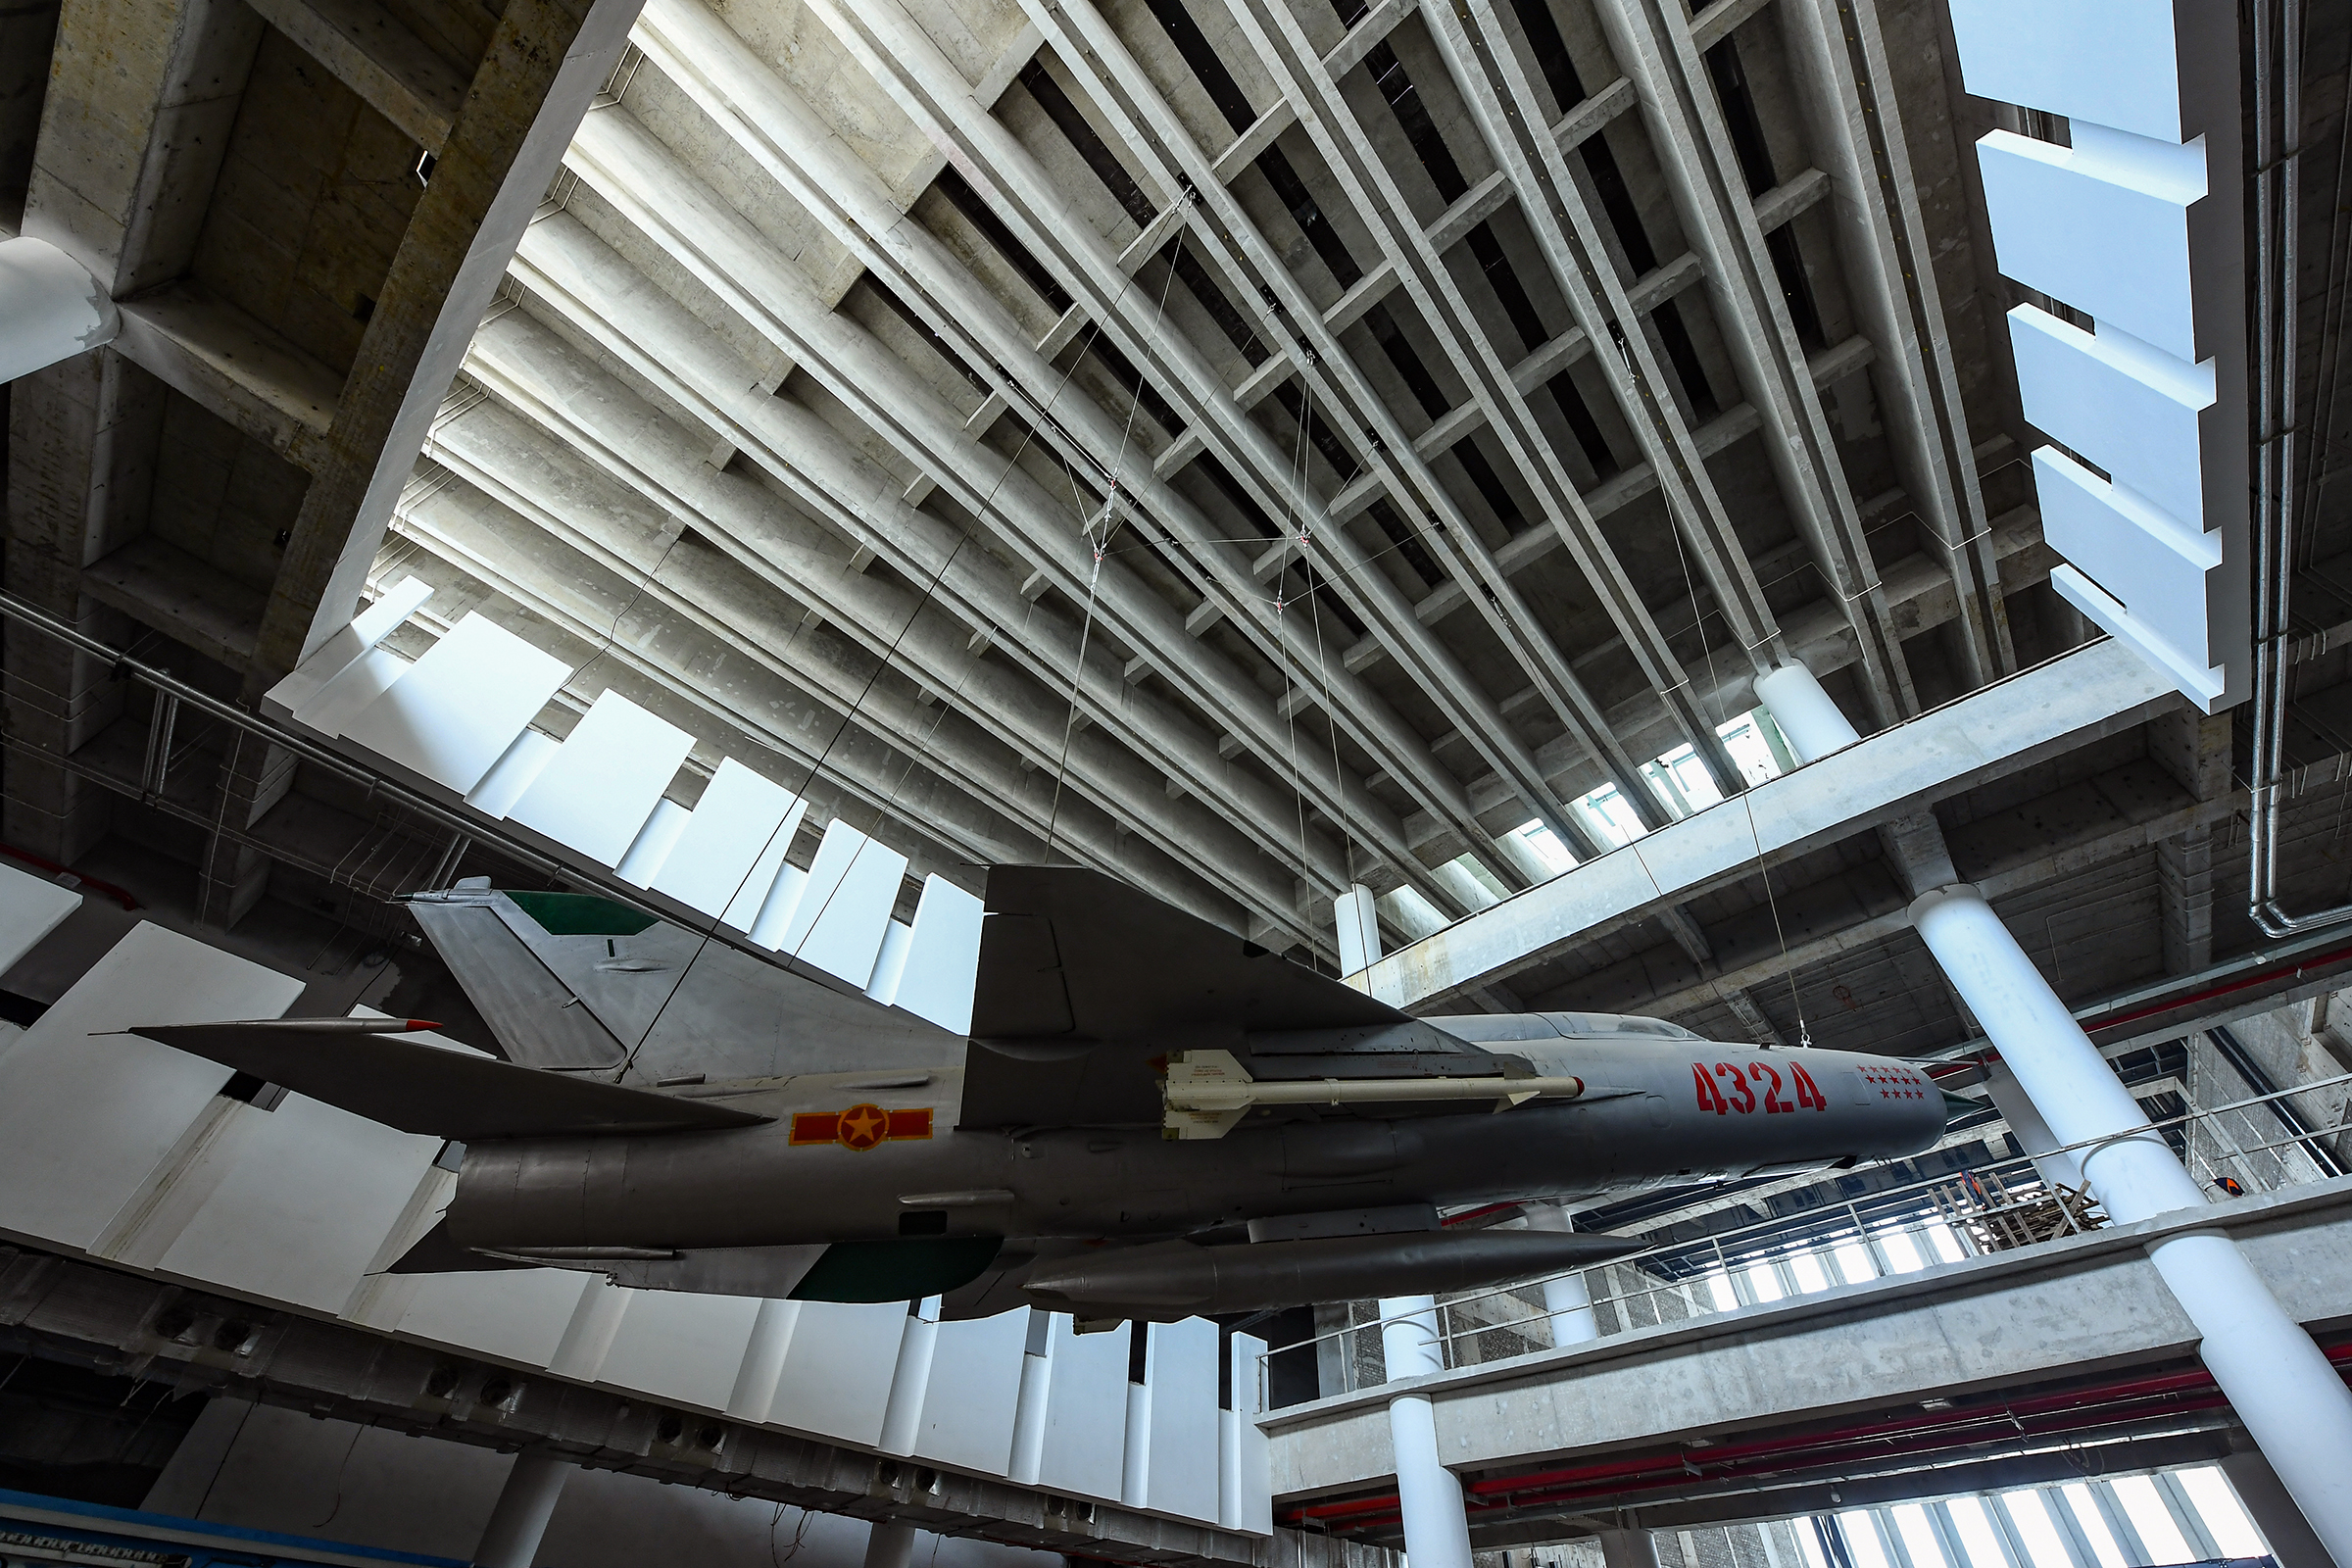 Khám phá loạt máy bay, xe tăng, khí tài quân sự 'khủng' tại bảo tàng rộng 740.000m2 ở Hà Nội- Ảnh 6.